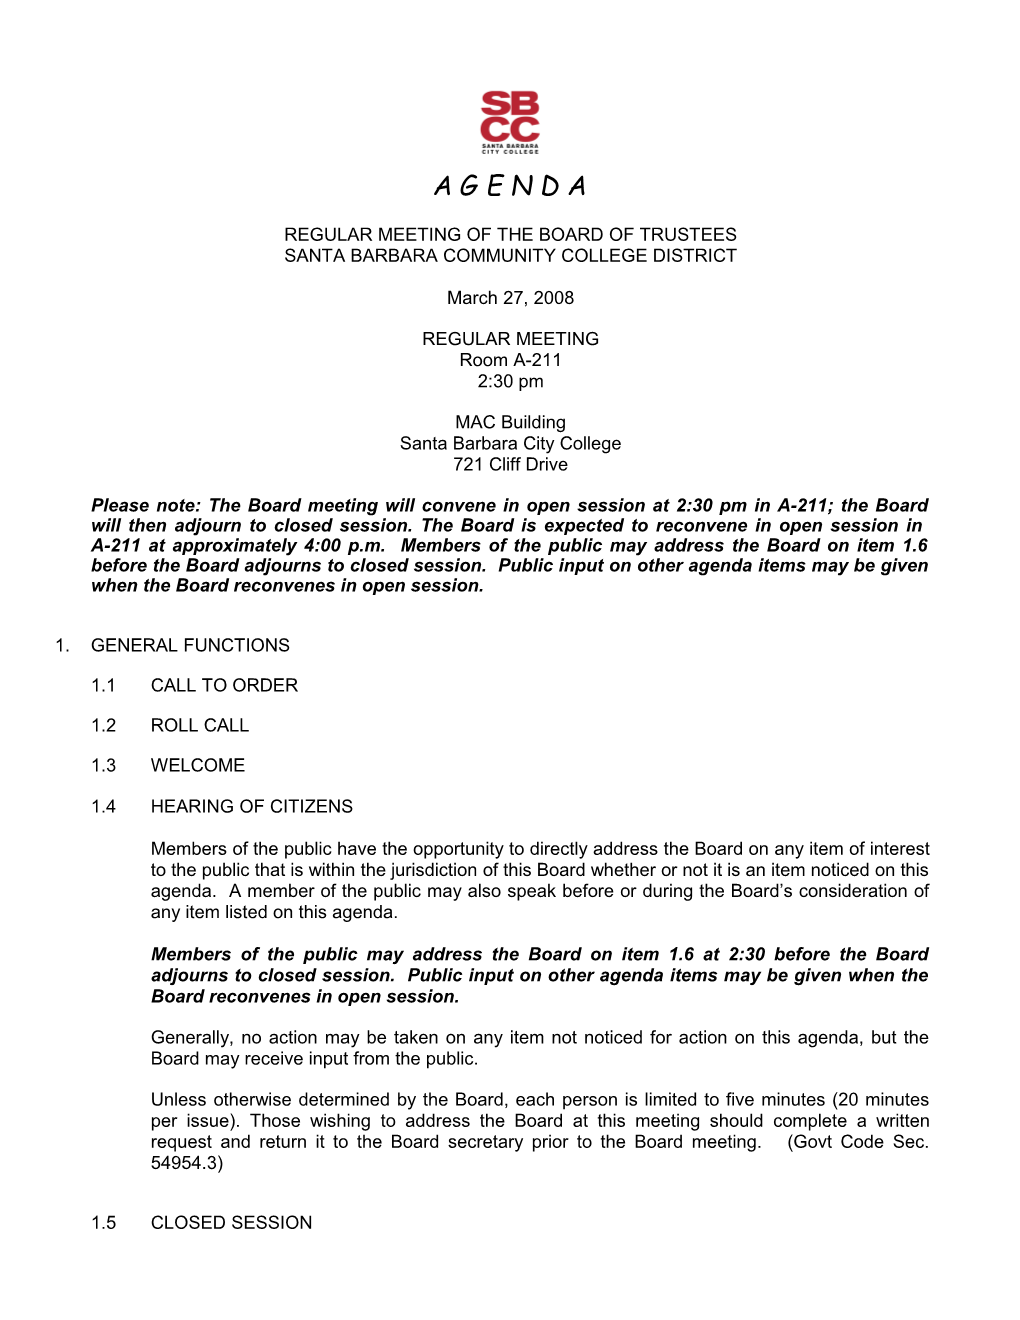 Board Agenda for June 27, 1996